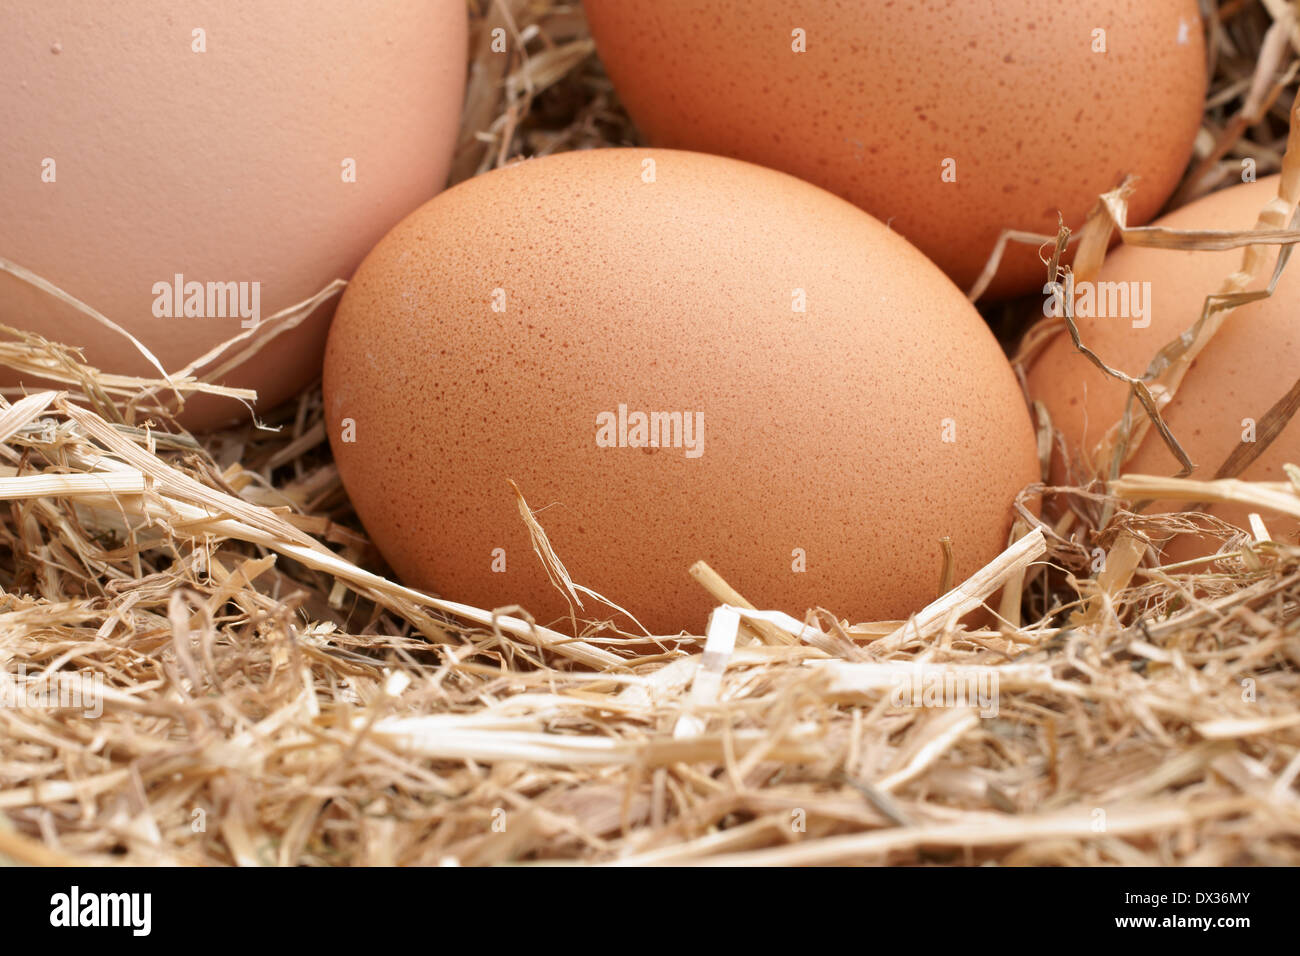 Frisch gelegt freilaufenden Hühner Eiern in einem Bett aus Stroh Stockfoto